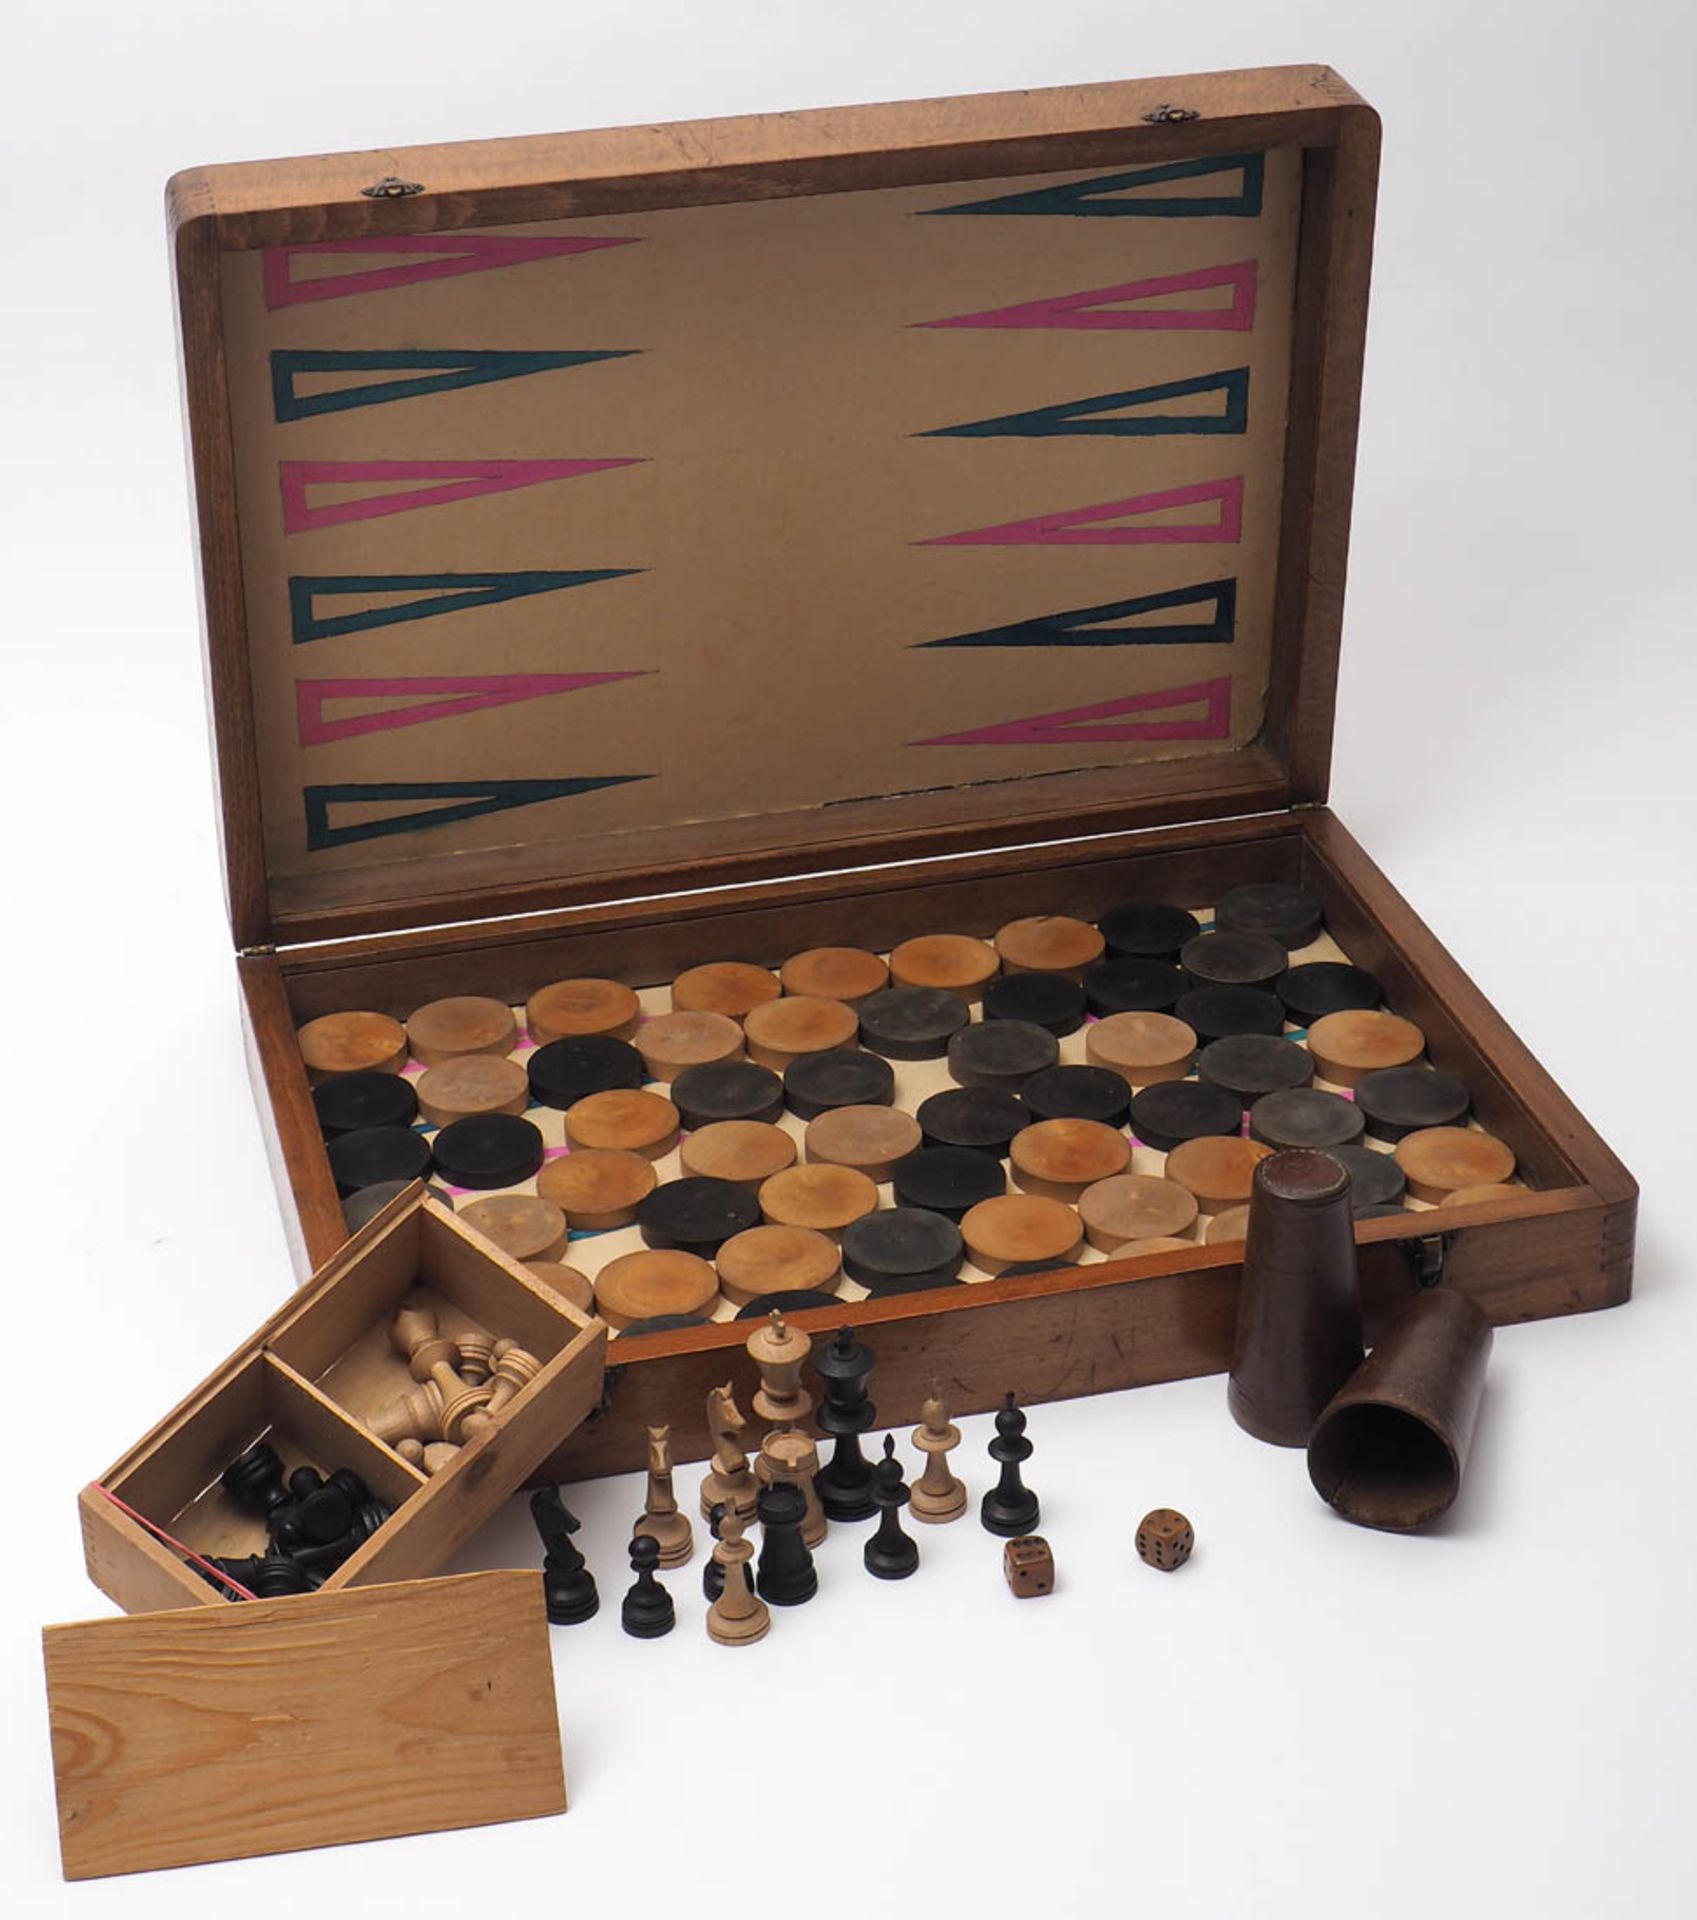 Spielkasten Schach und Backgammon. Mit Figuren, Spielsteinen und zwei Würfelbechern. Maße des